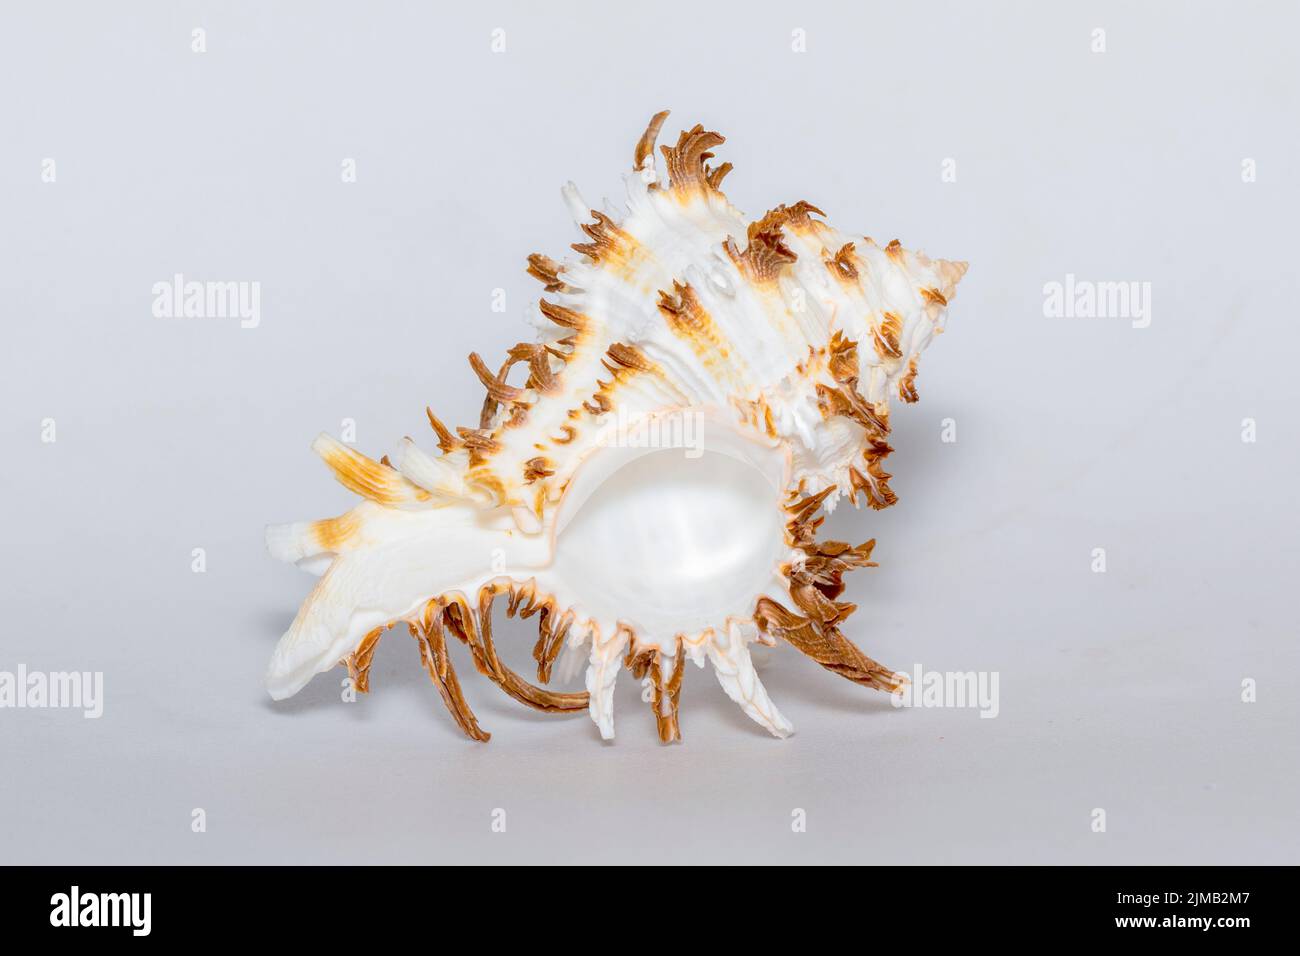 Bild von chicoreus ramosus Murex auf weißem Hintergrund. Muscheln. Unterwassertiere. Stockfoto